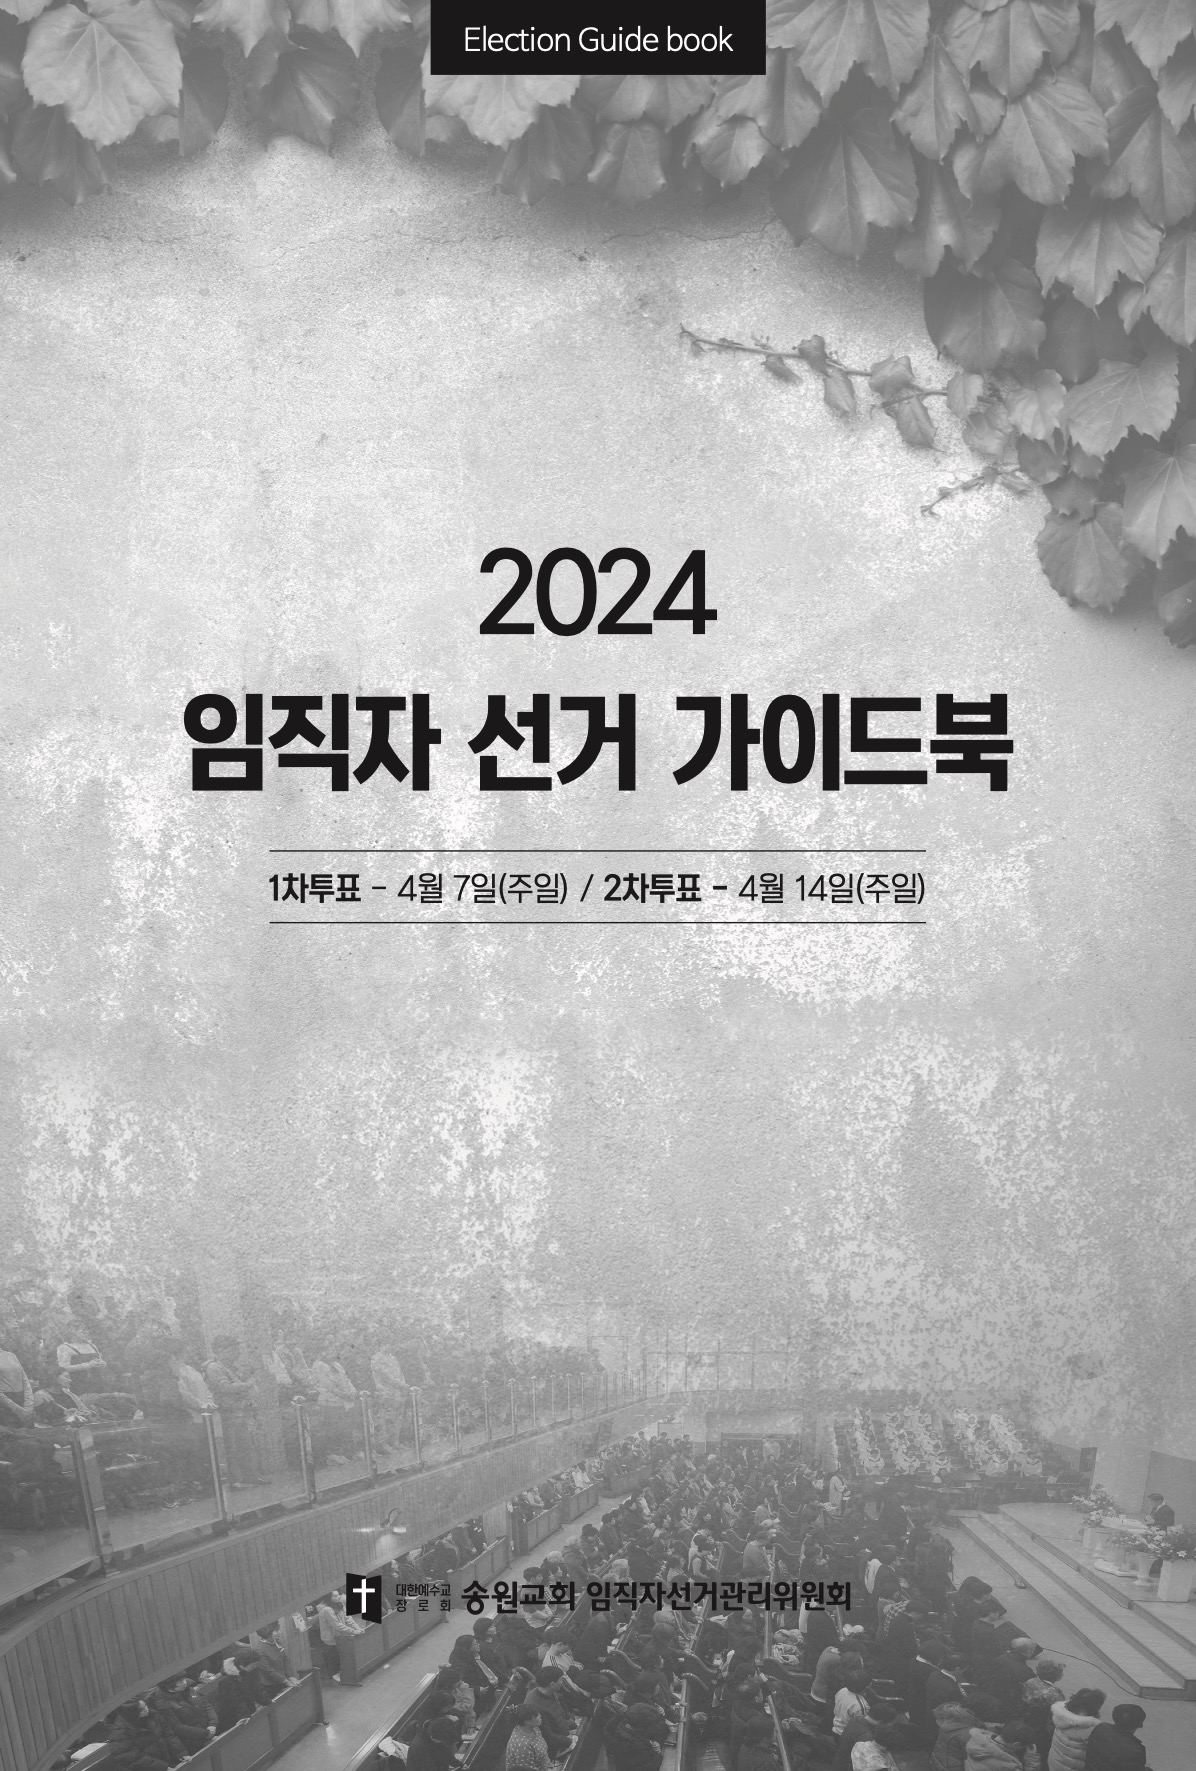 2024_임직자선거가이드북_Final 1.jpeg